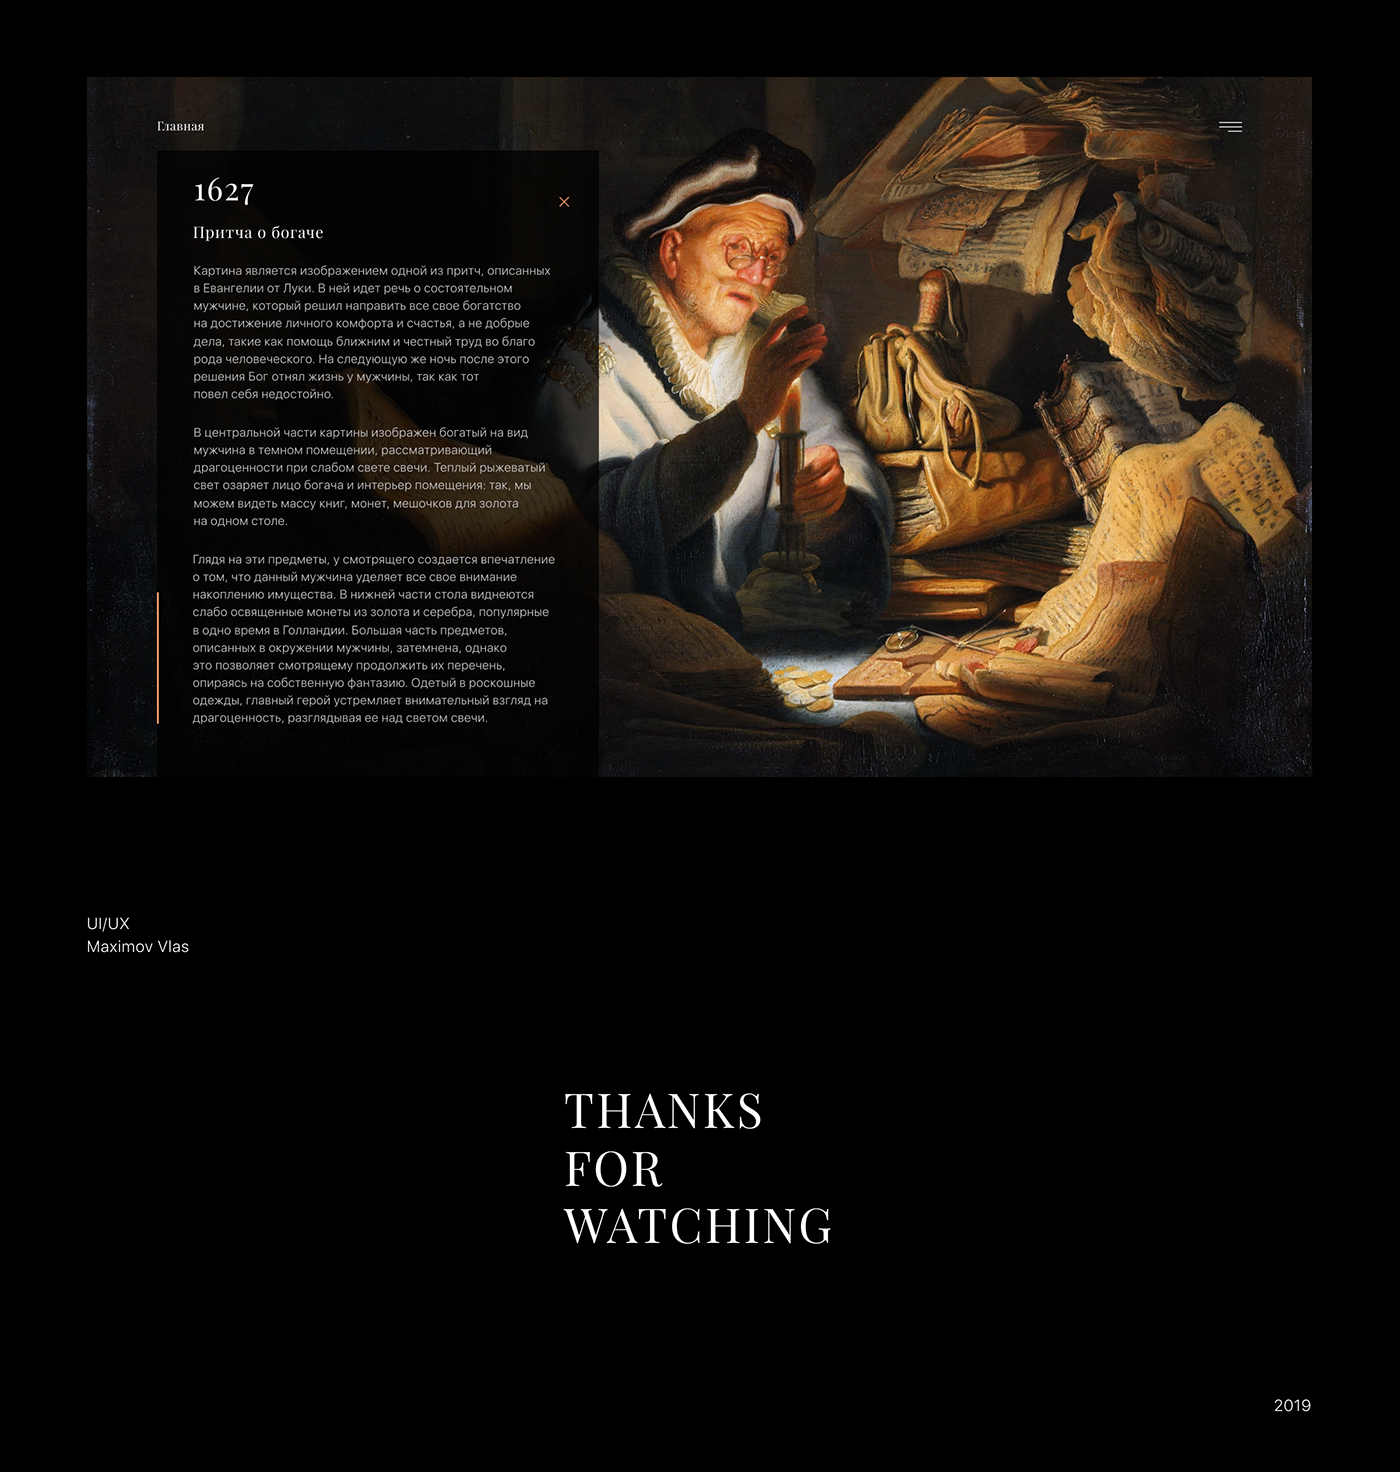 rembrandt UI ux Website design artist painter Renaissance landing page